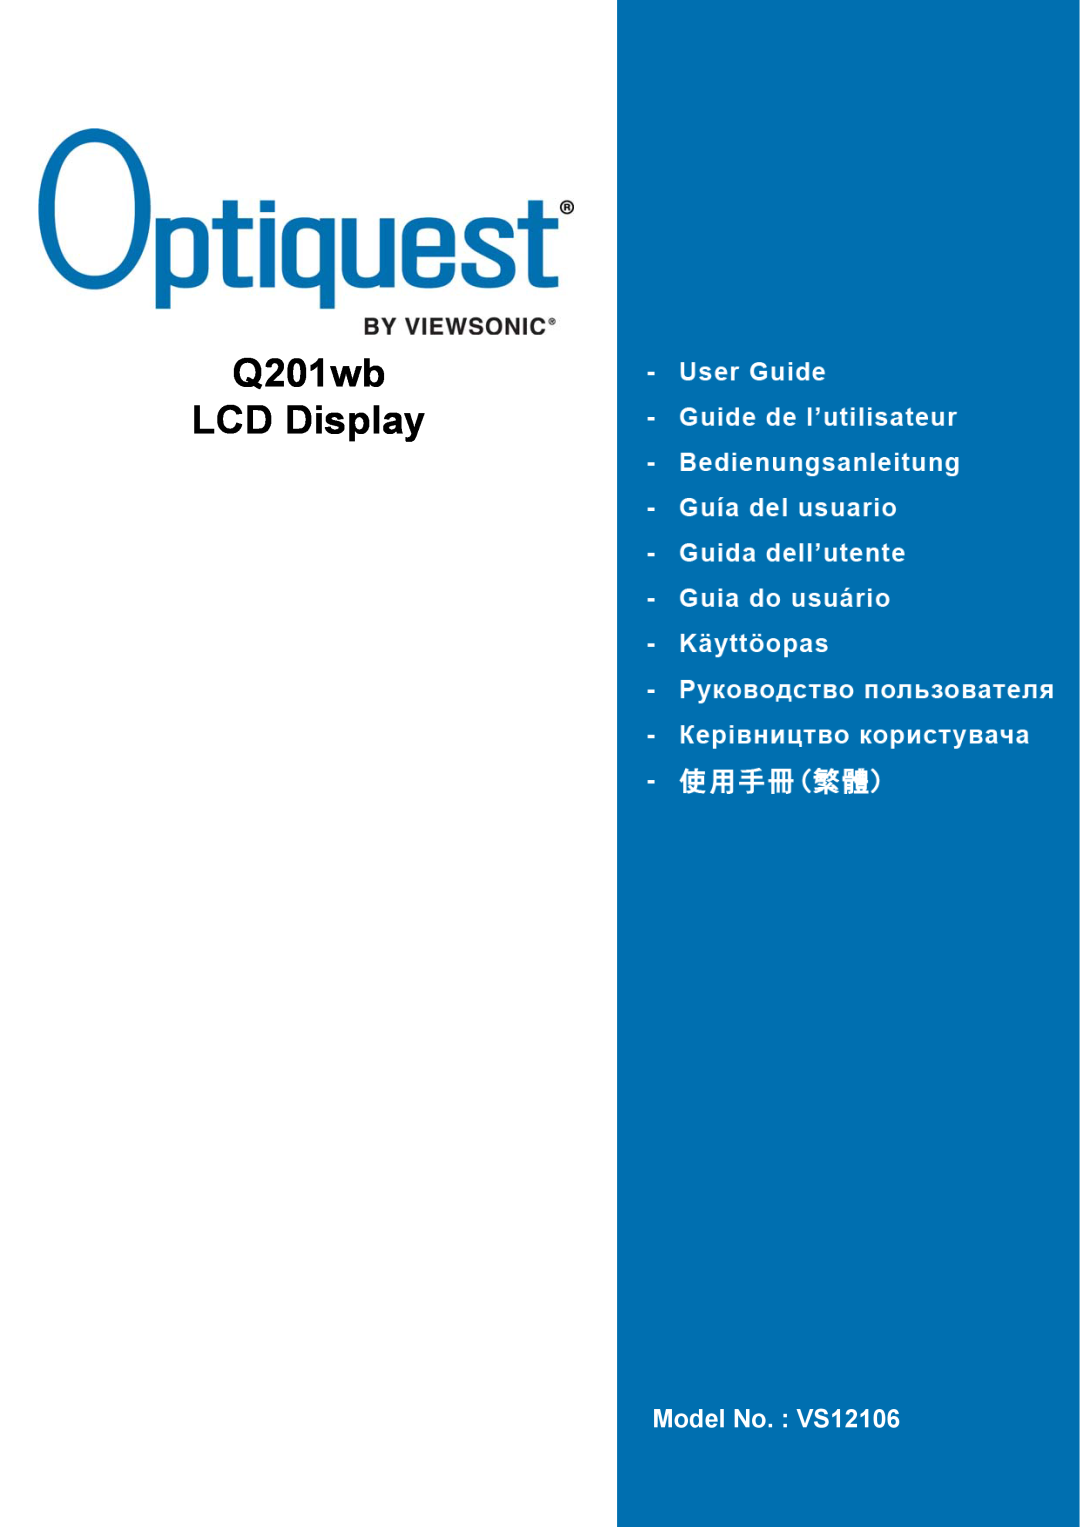 Optiquest manual Q201wb LCD Display, Model No. VS12106 